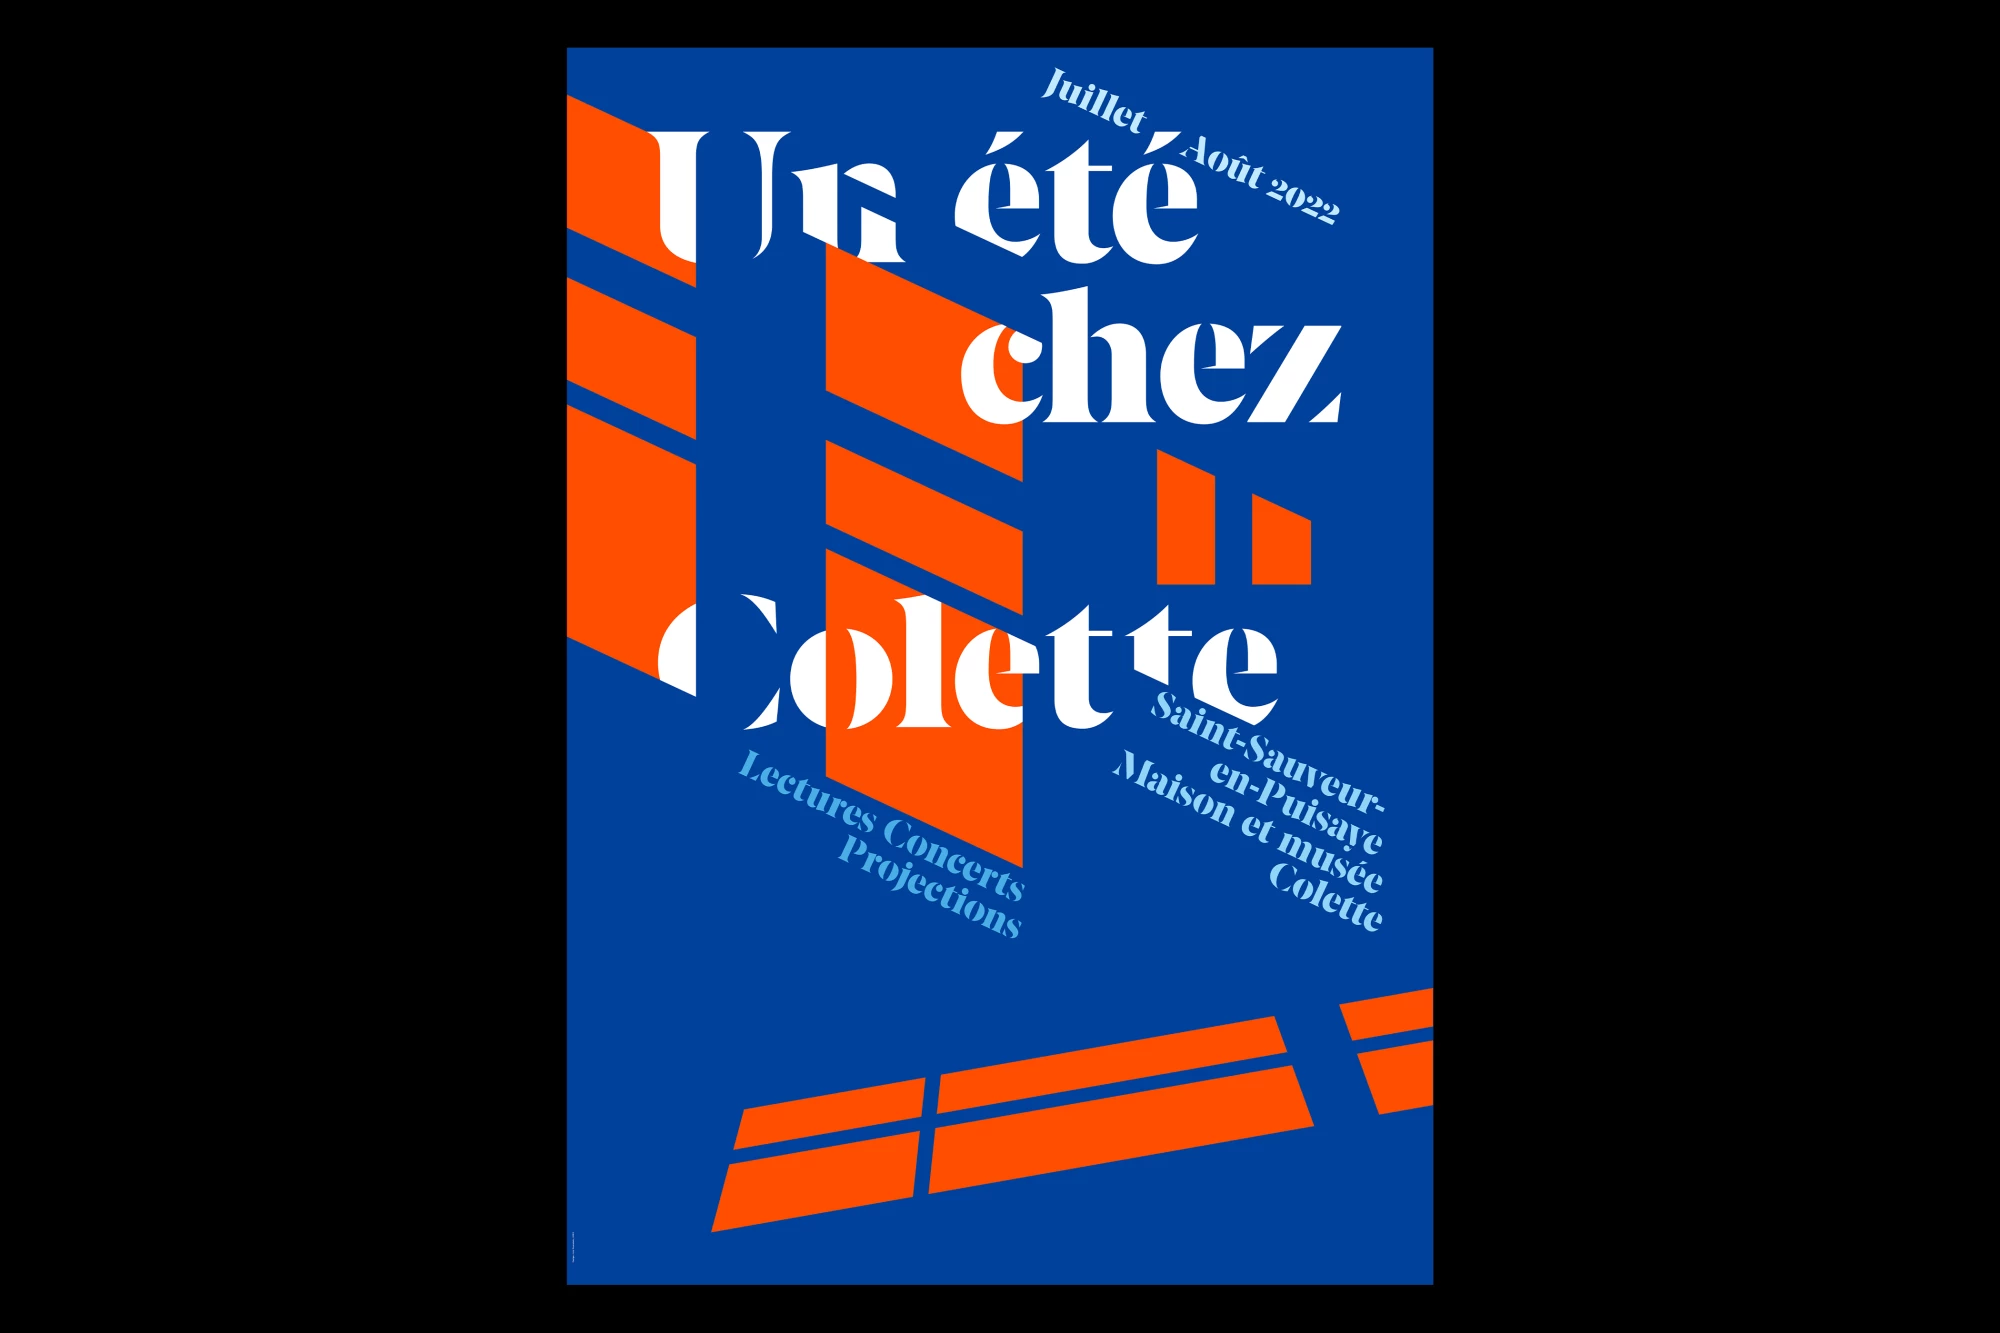 Léo Grunstein - A Summer at Colette’s, 2022, Maison de Colette, Poster, Publication, Branding, 2022